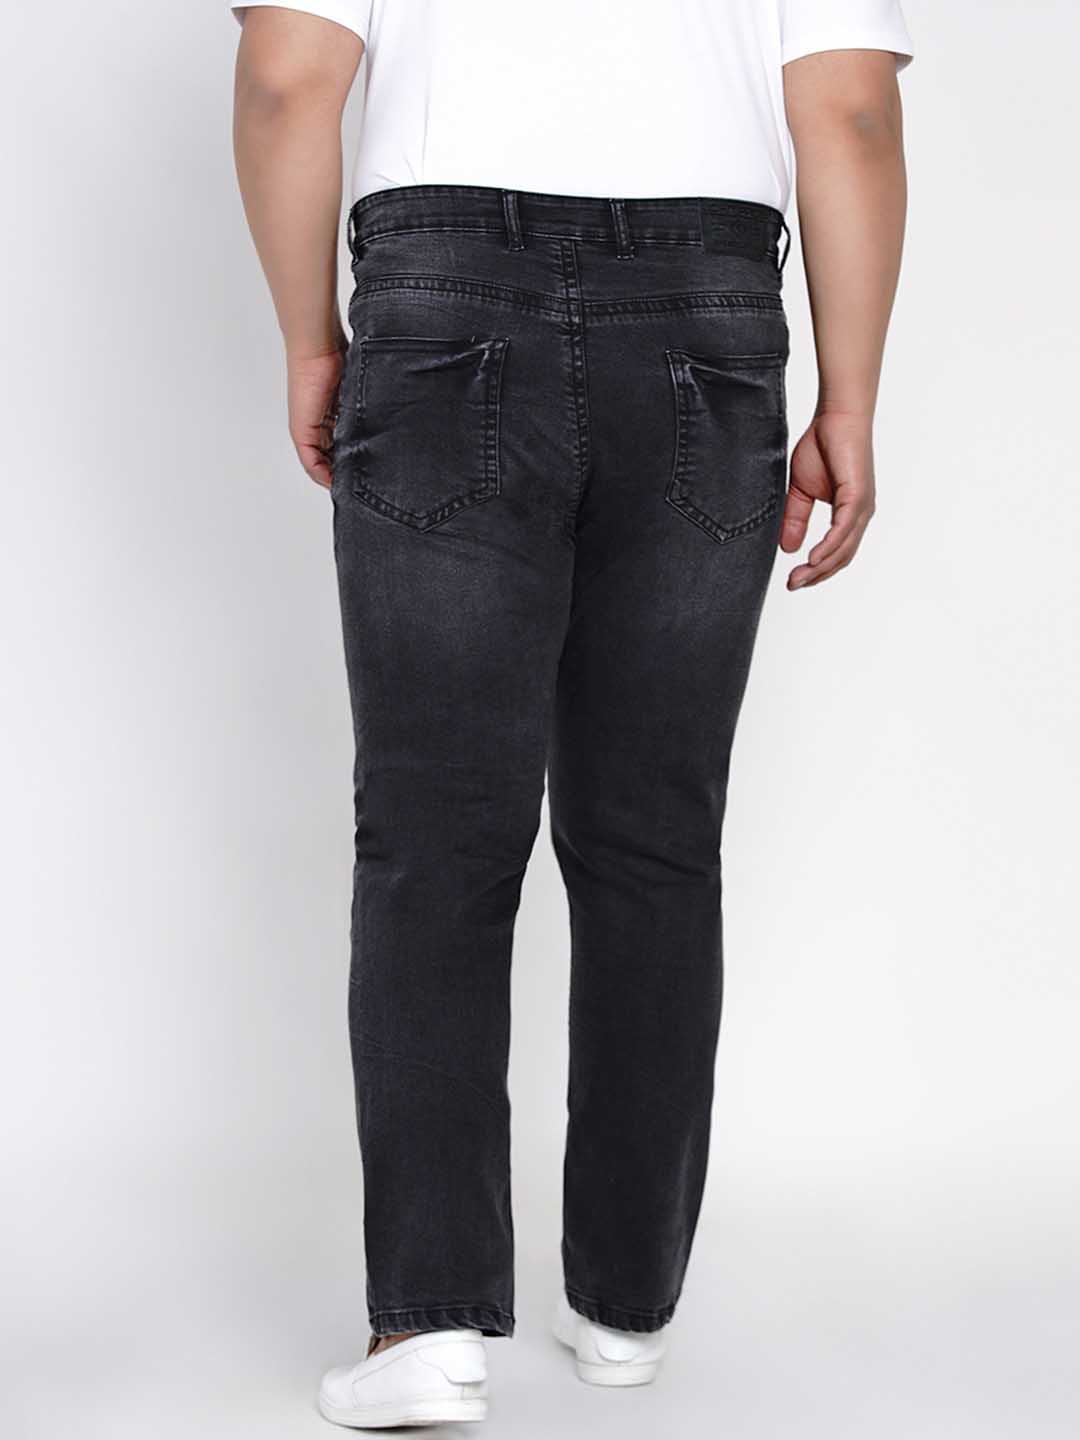 bottomwear/jeans/JPJ12125/jpj12125-5.jpg